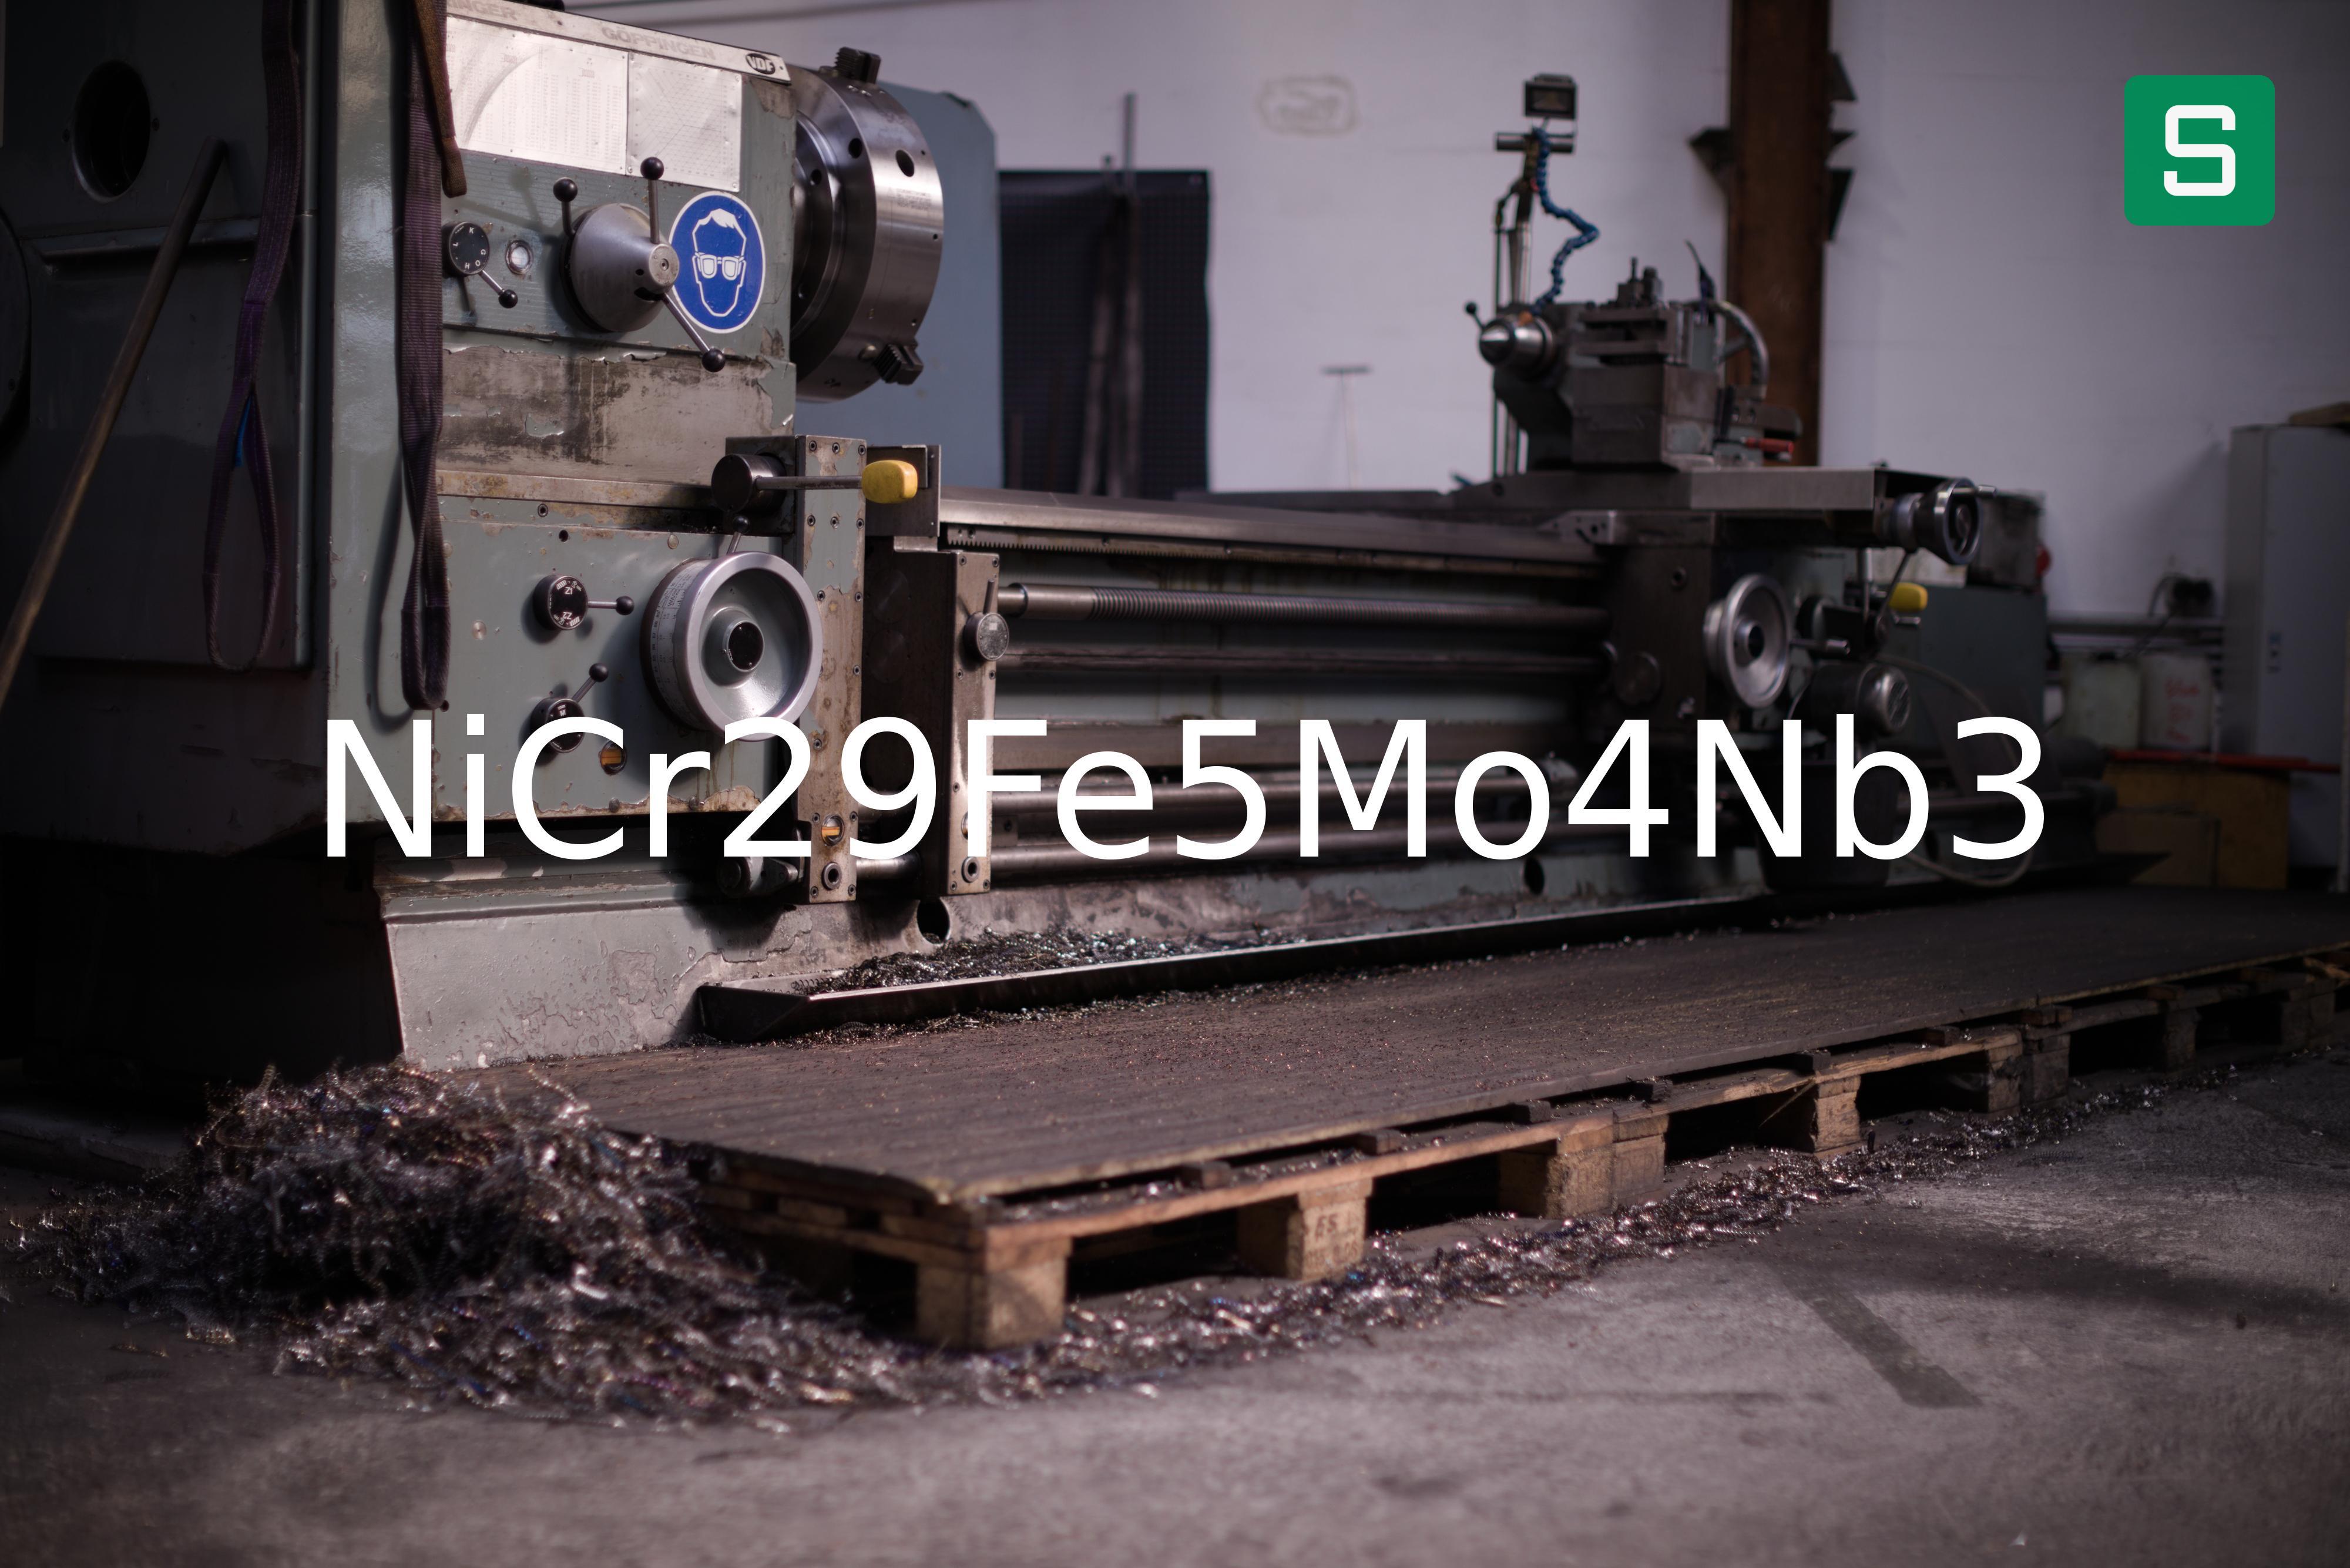 Steel Material: NiCr29Fe5Mo4Nb3